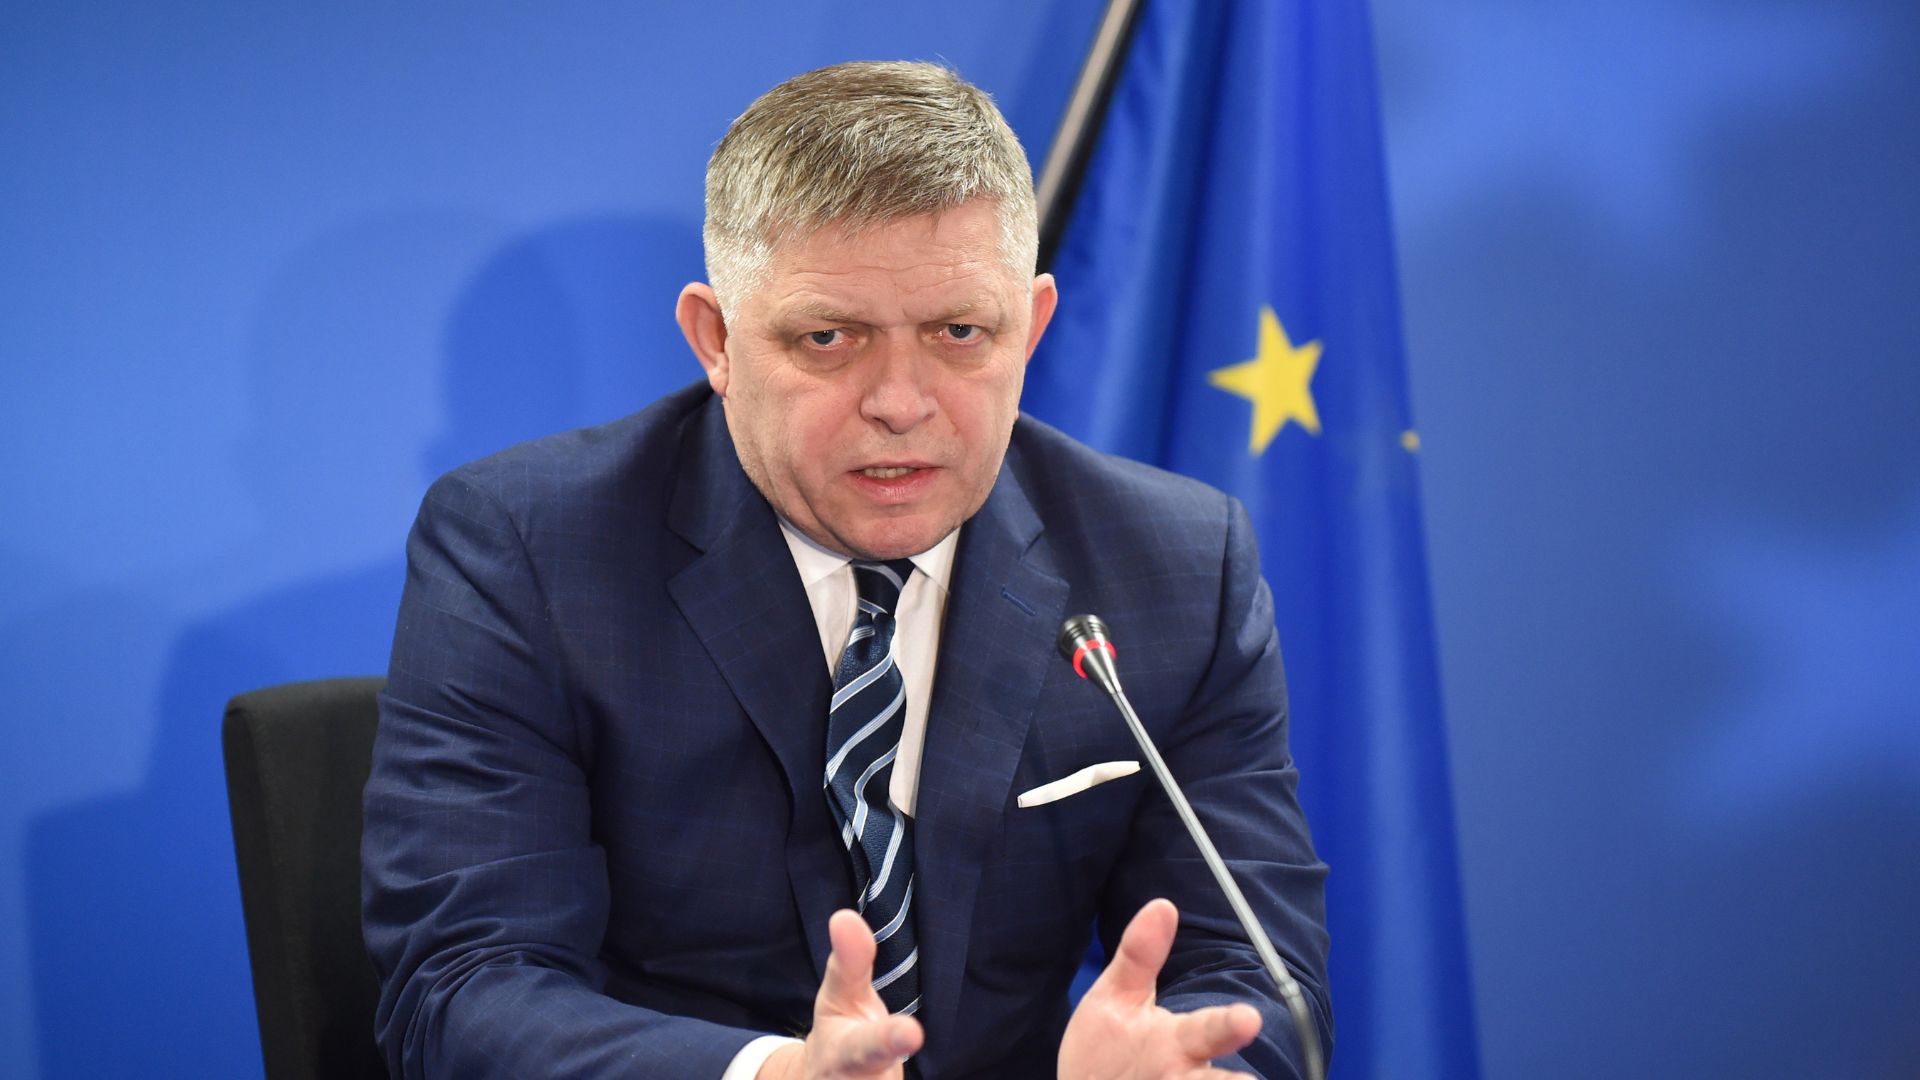 In Slovacchia il premier Fico ferito da arma da fuoco, Meloni: “Attacco alla democrazia”